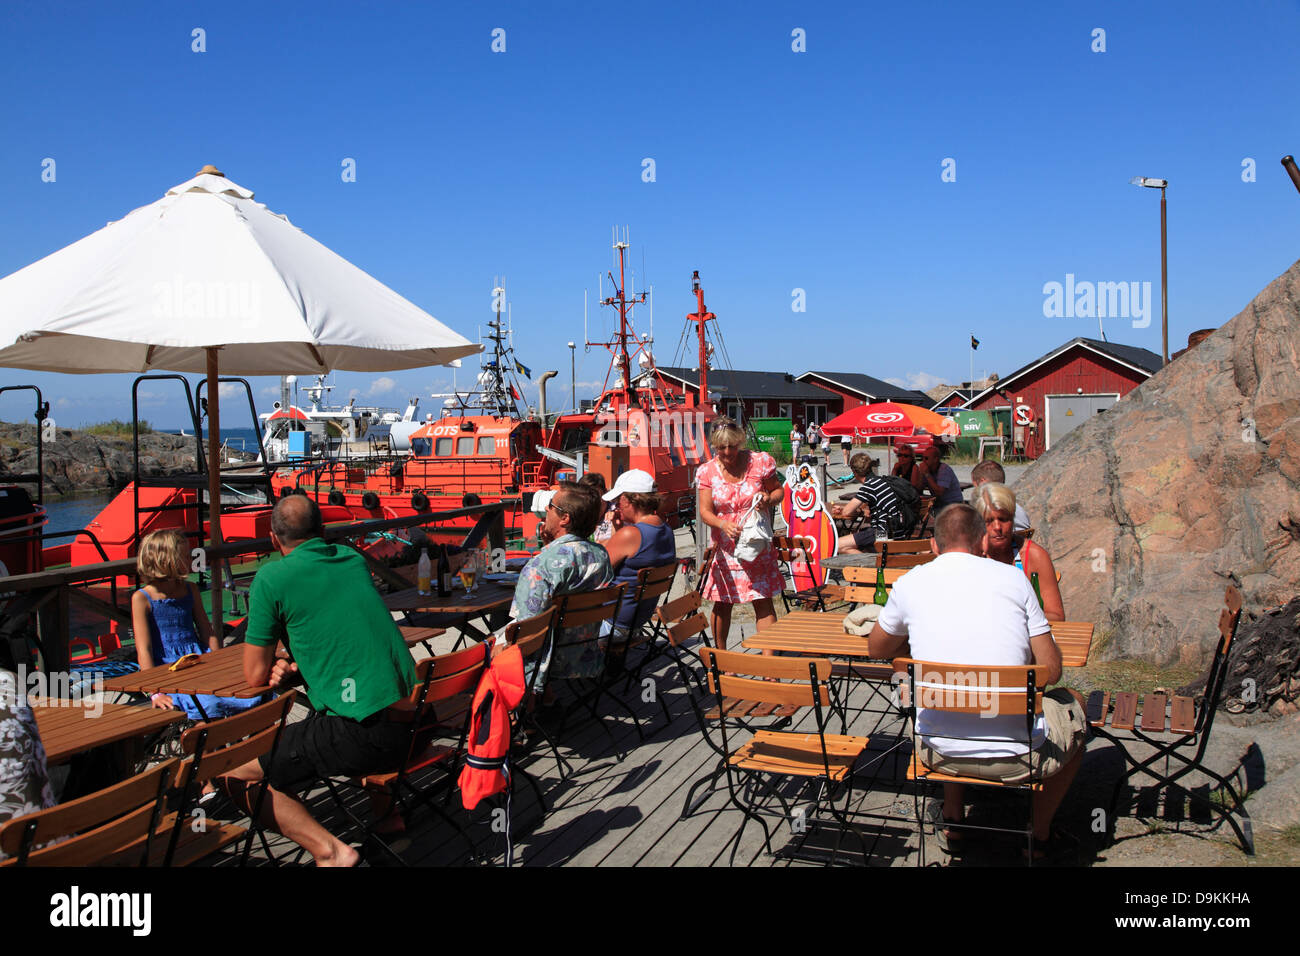 Cafe, port de l'île de Landsort (Oeja), archipel de Stockholm, côte de la mer Baltique, la Suède, Scandinavie Banque D'Images